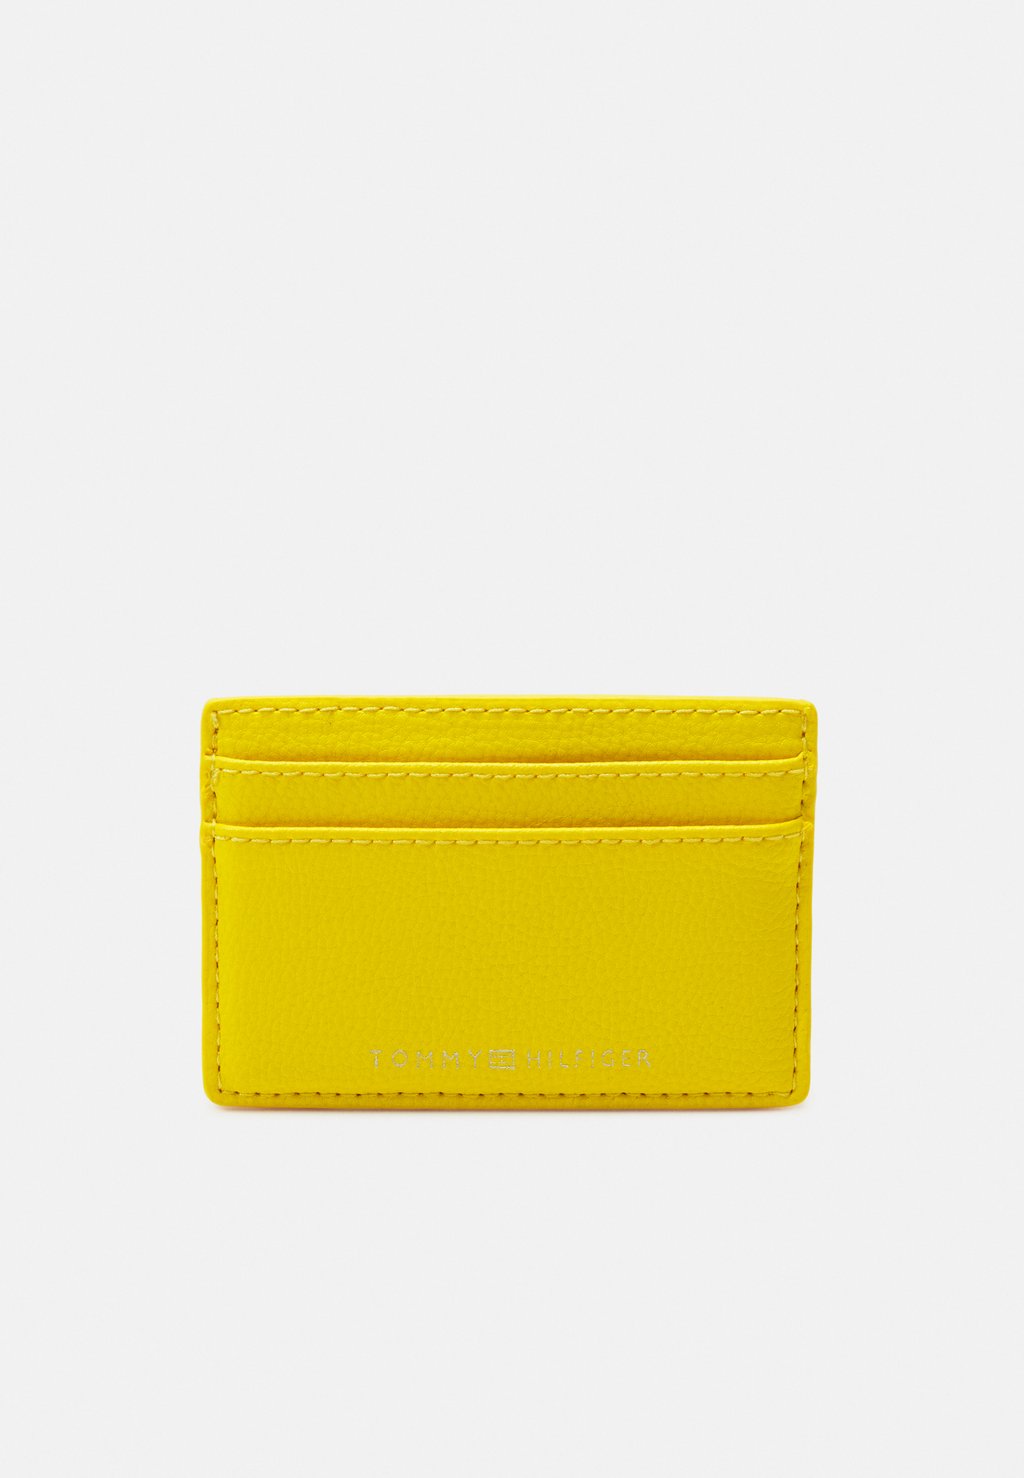 бумажник желтый оранжевый Бумажник Tommy Hilfiger, желтый